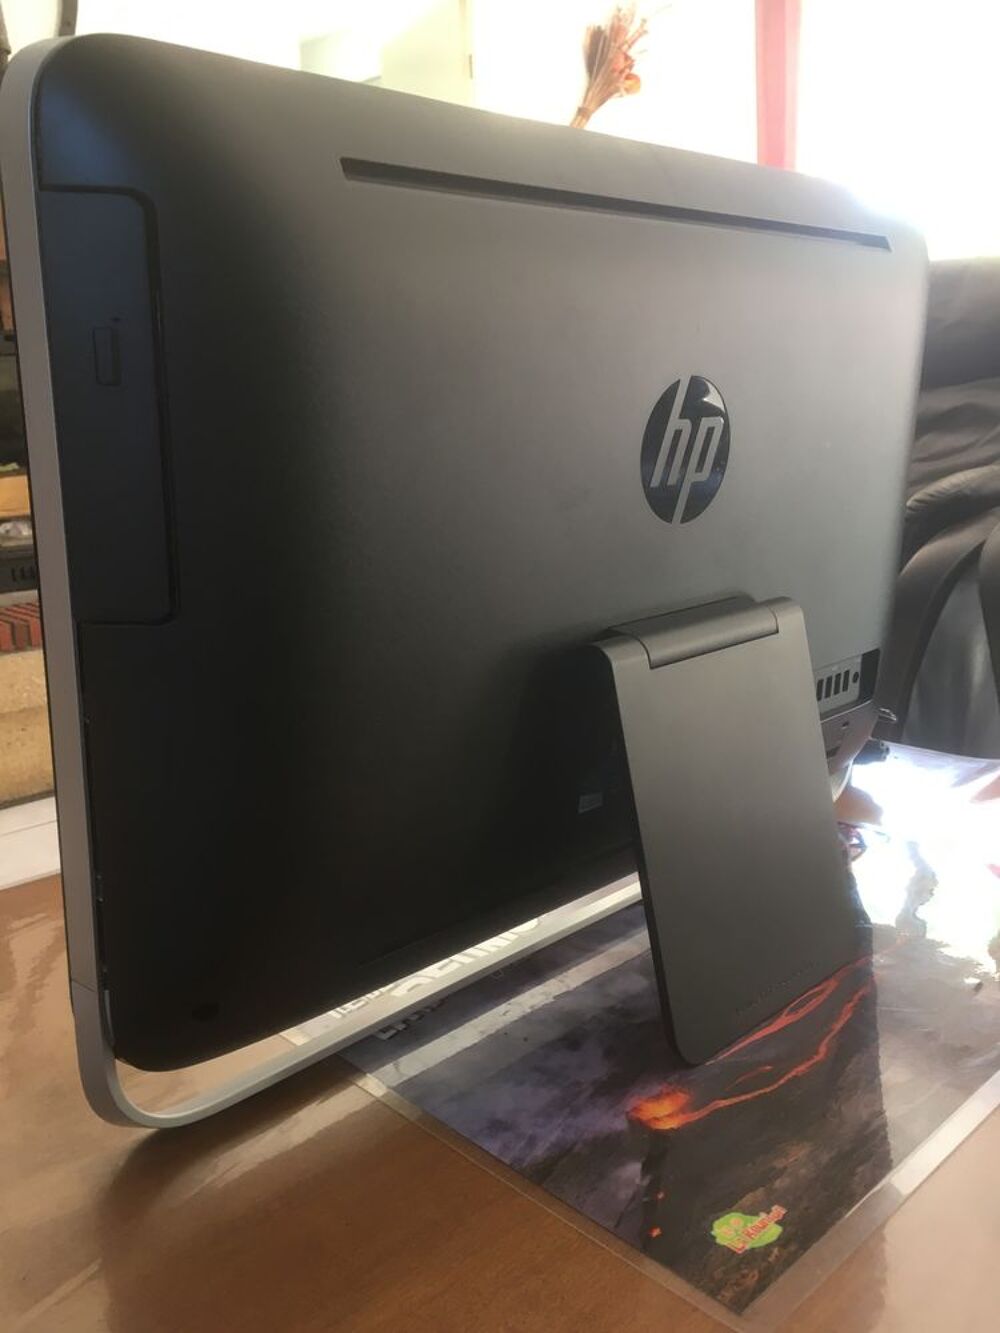  ordinateur tout en un HP pavillon 23 Matriel informatique